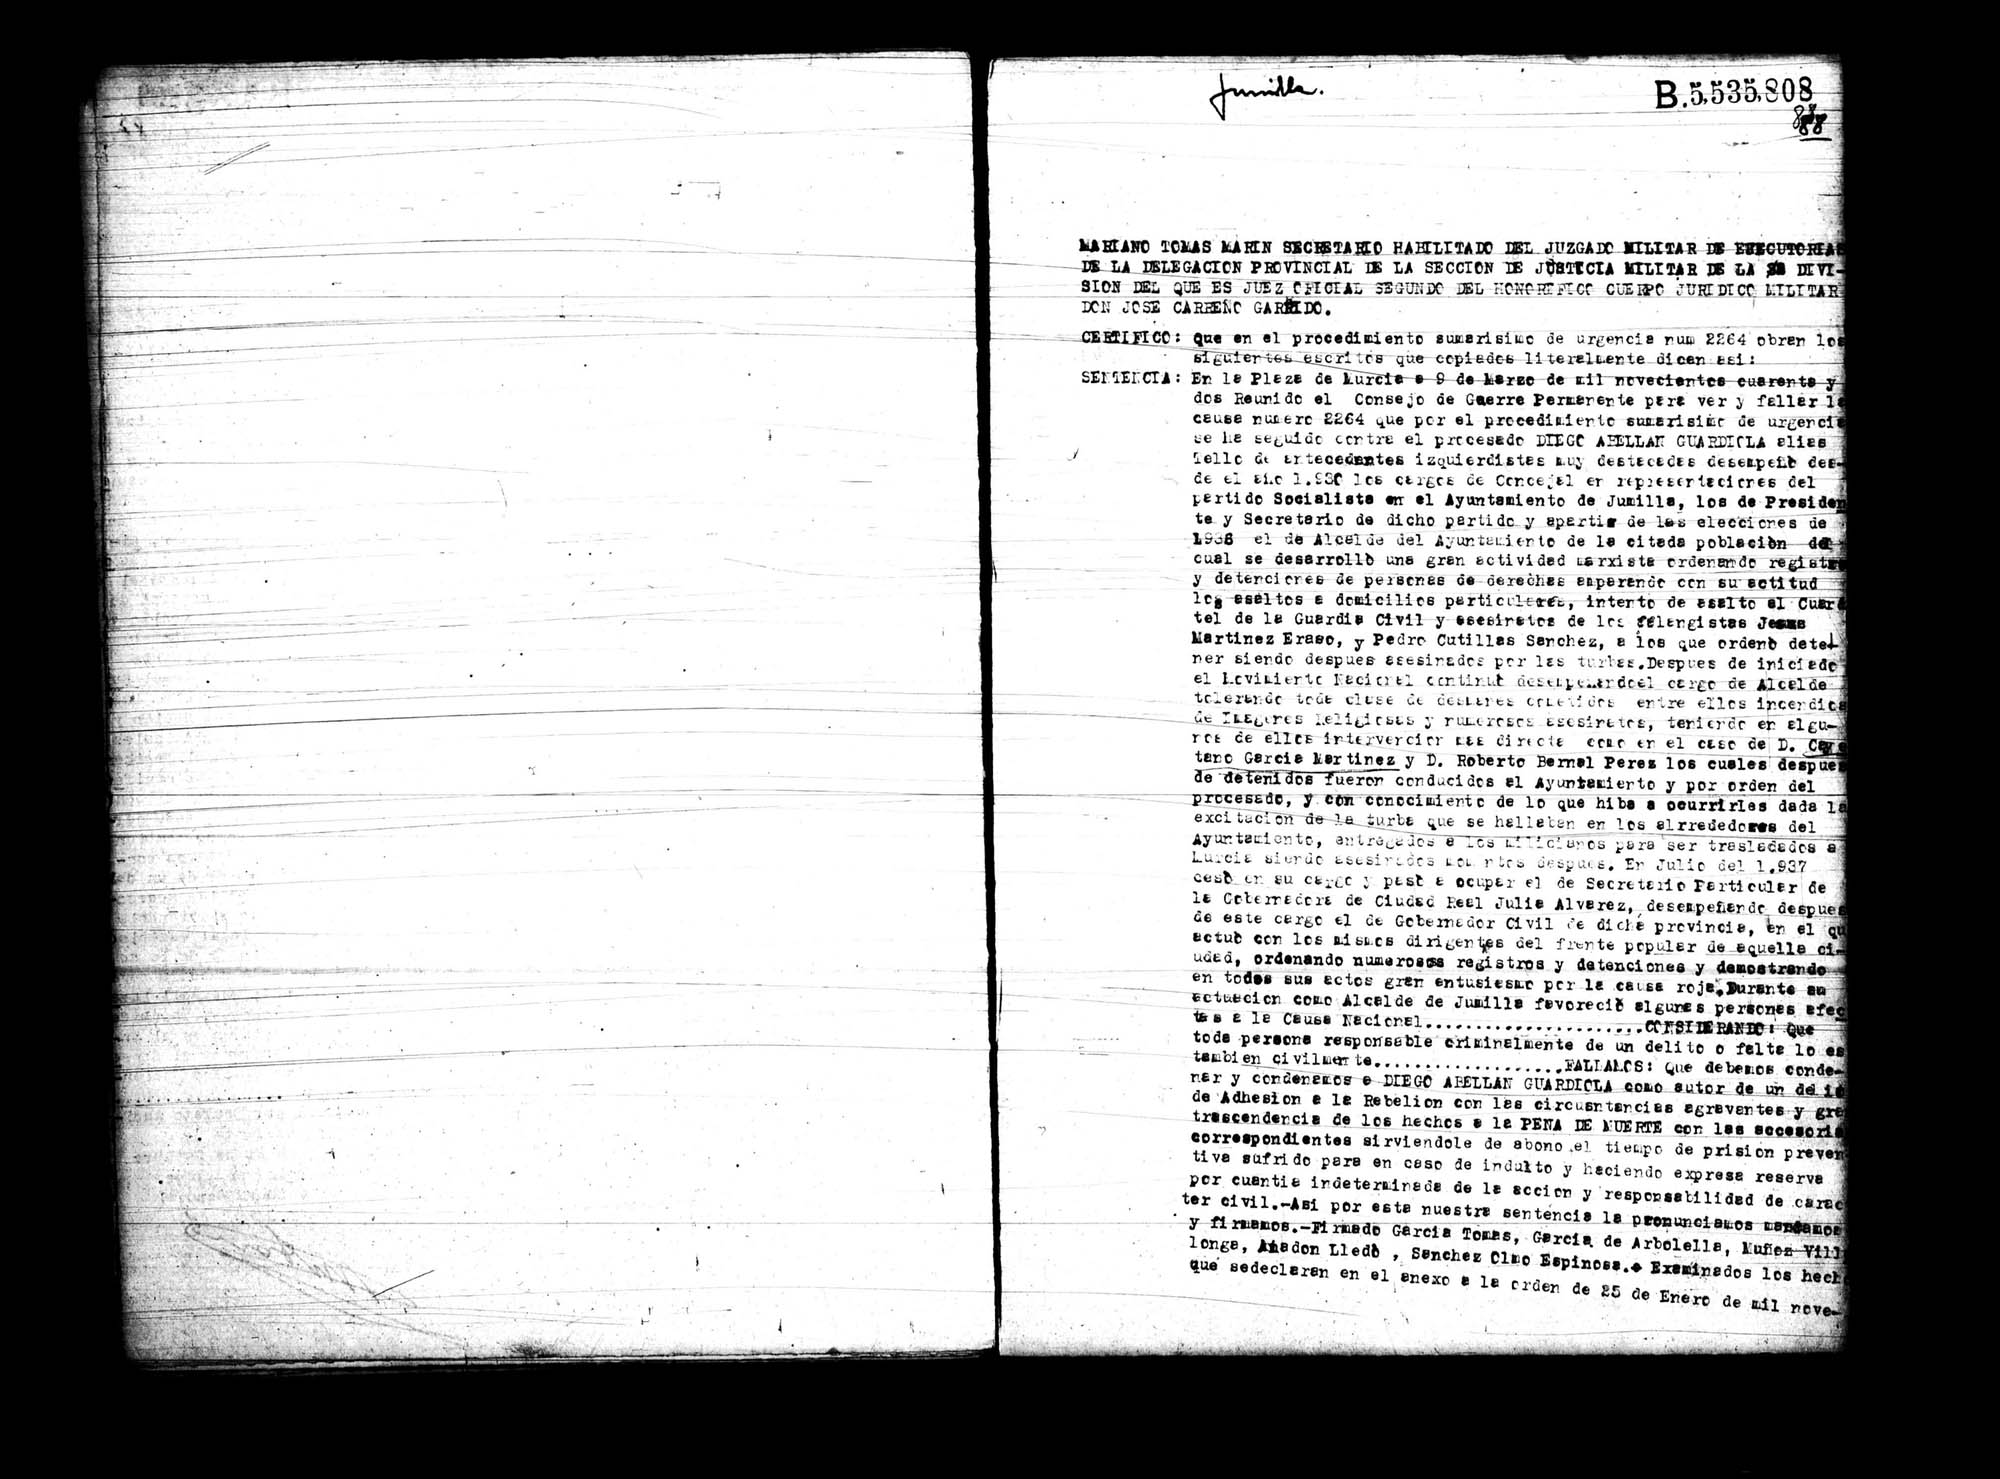 Certificado de la sentencia pronunciada contra Diego Abellán Guardiola, causa 2264, el 9 de marzo de 1942 en Murcia.